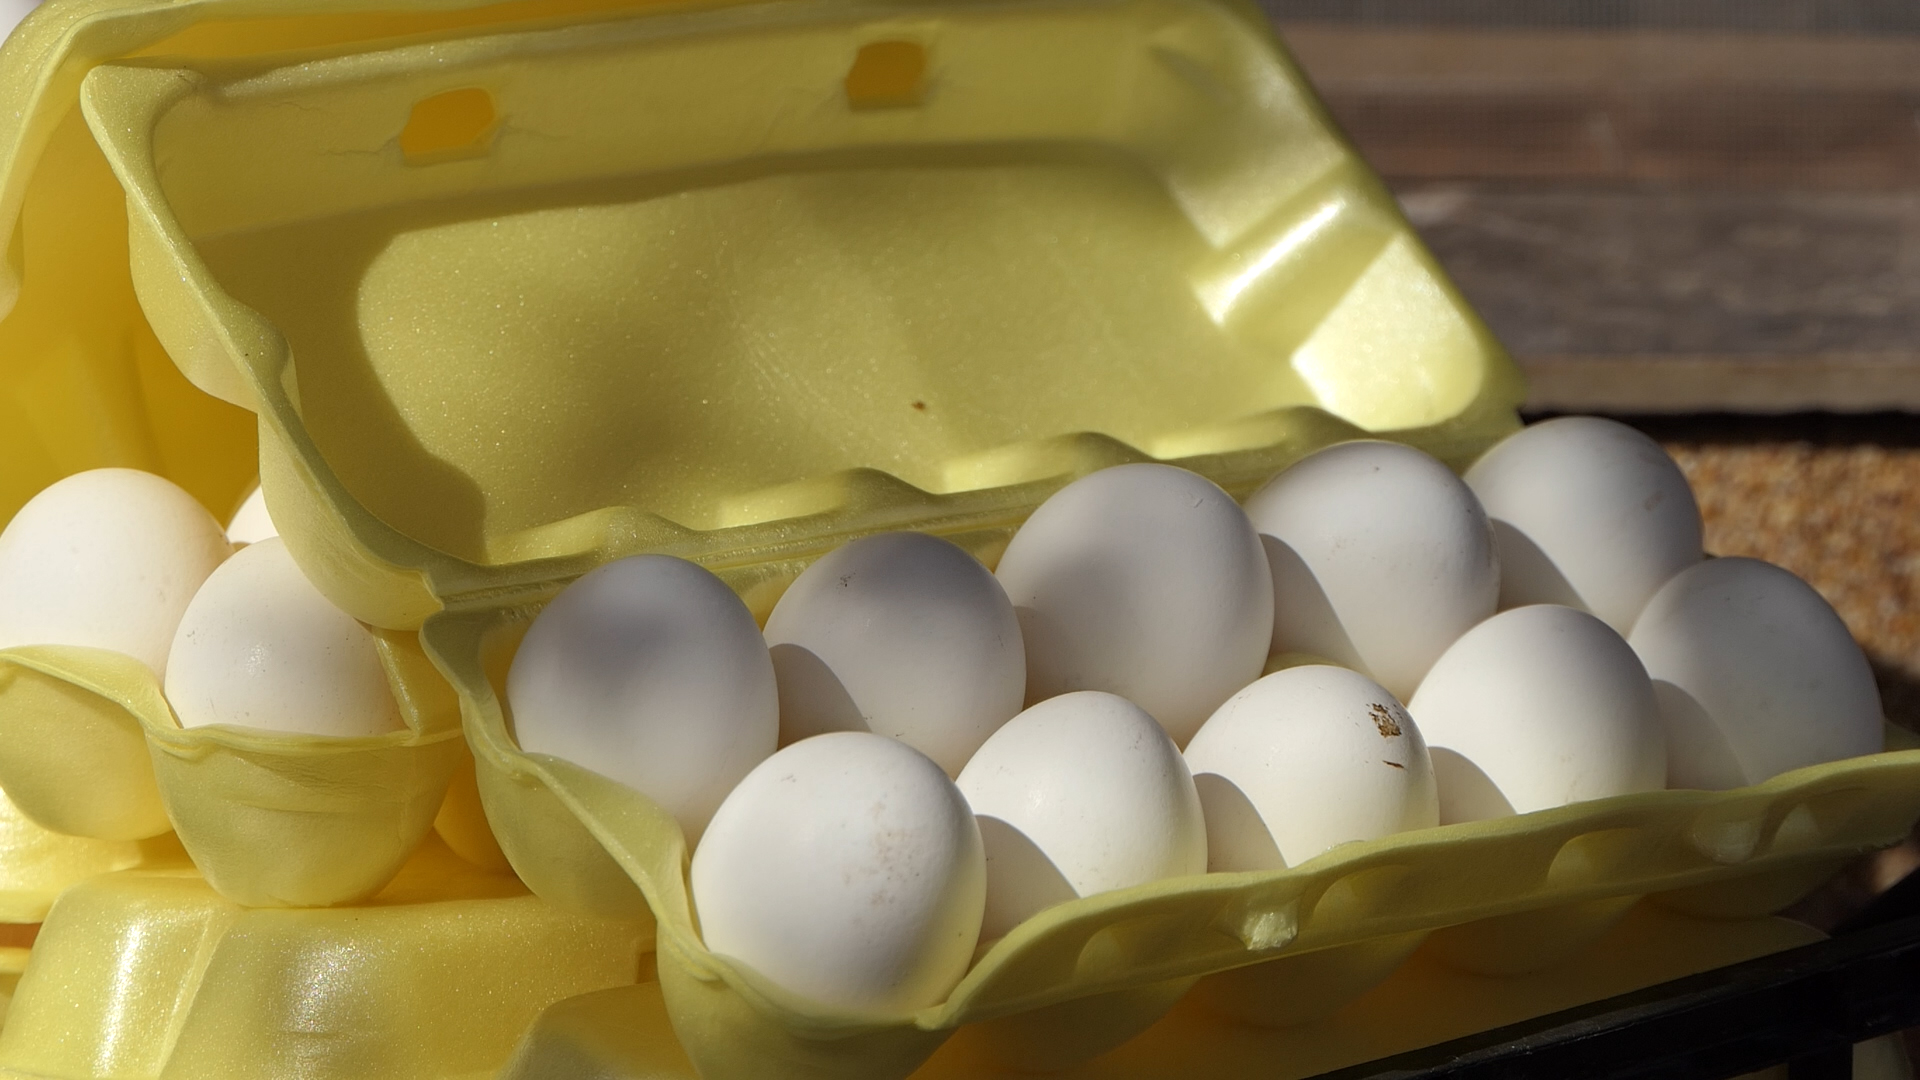 Bela kokošja jaja sve popularnija, organski uzgoj se širi